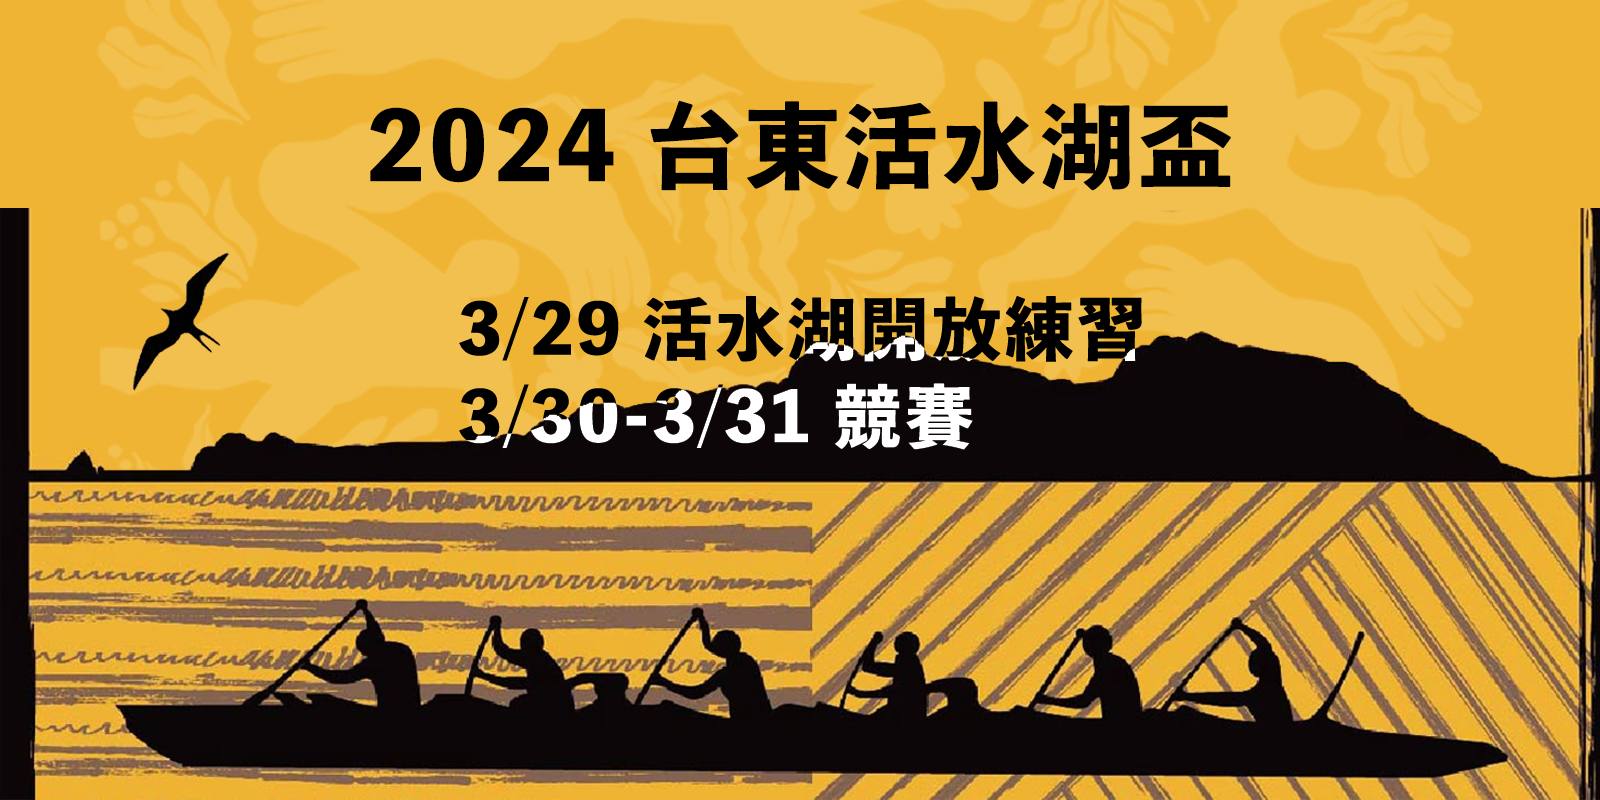 活水湖盃-- 3/30-3/31 帆船及南島支架舟競標賽